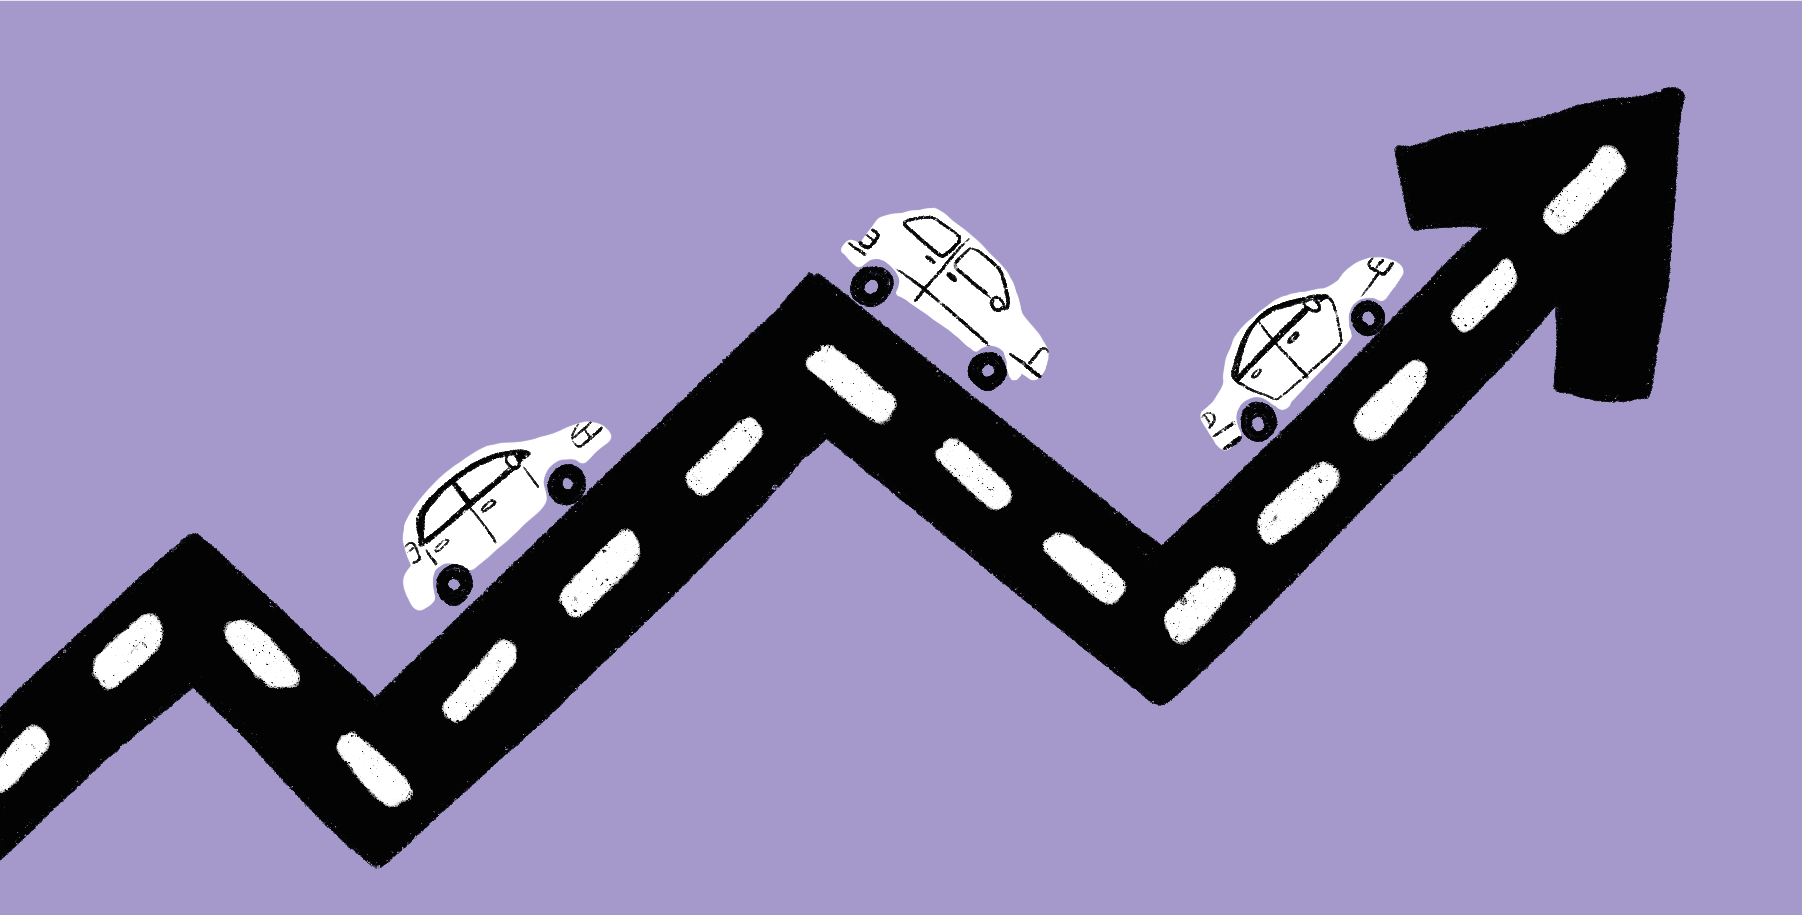 En väg formad som en uppåtpil med bilar som kör på den